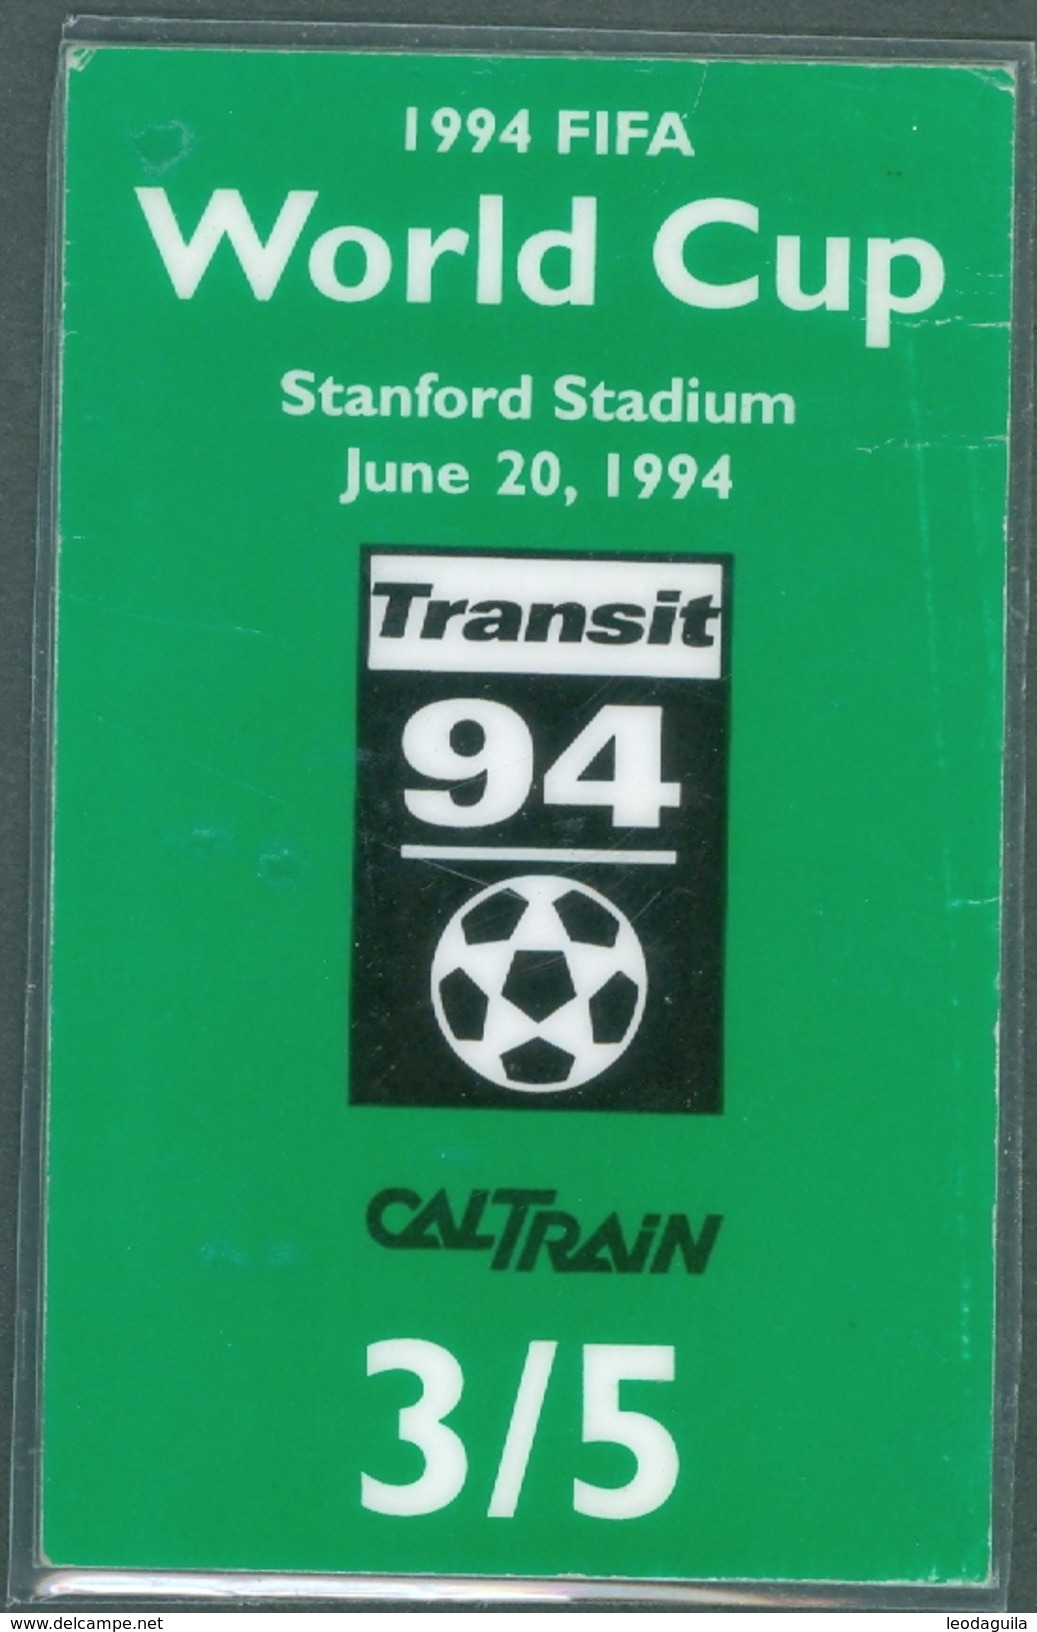 RAILWAY TICKET  -   CALTRAIN TICKET TO STANFORD STADIUM - USA  - FIFA WORLD CUP 1994 - World